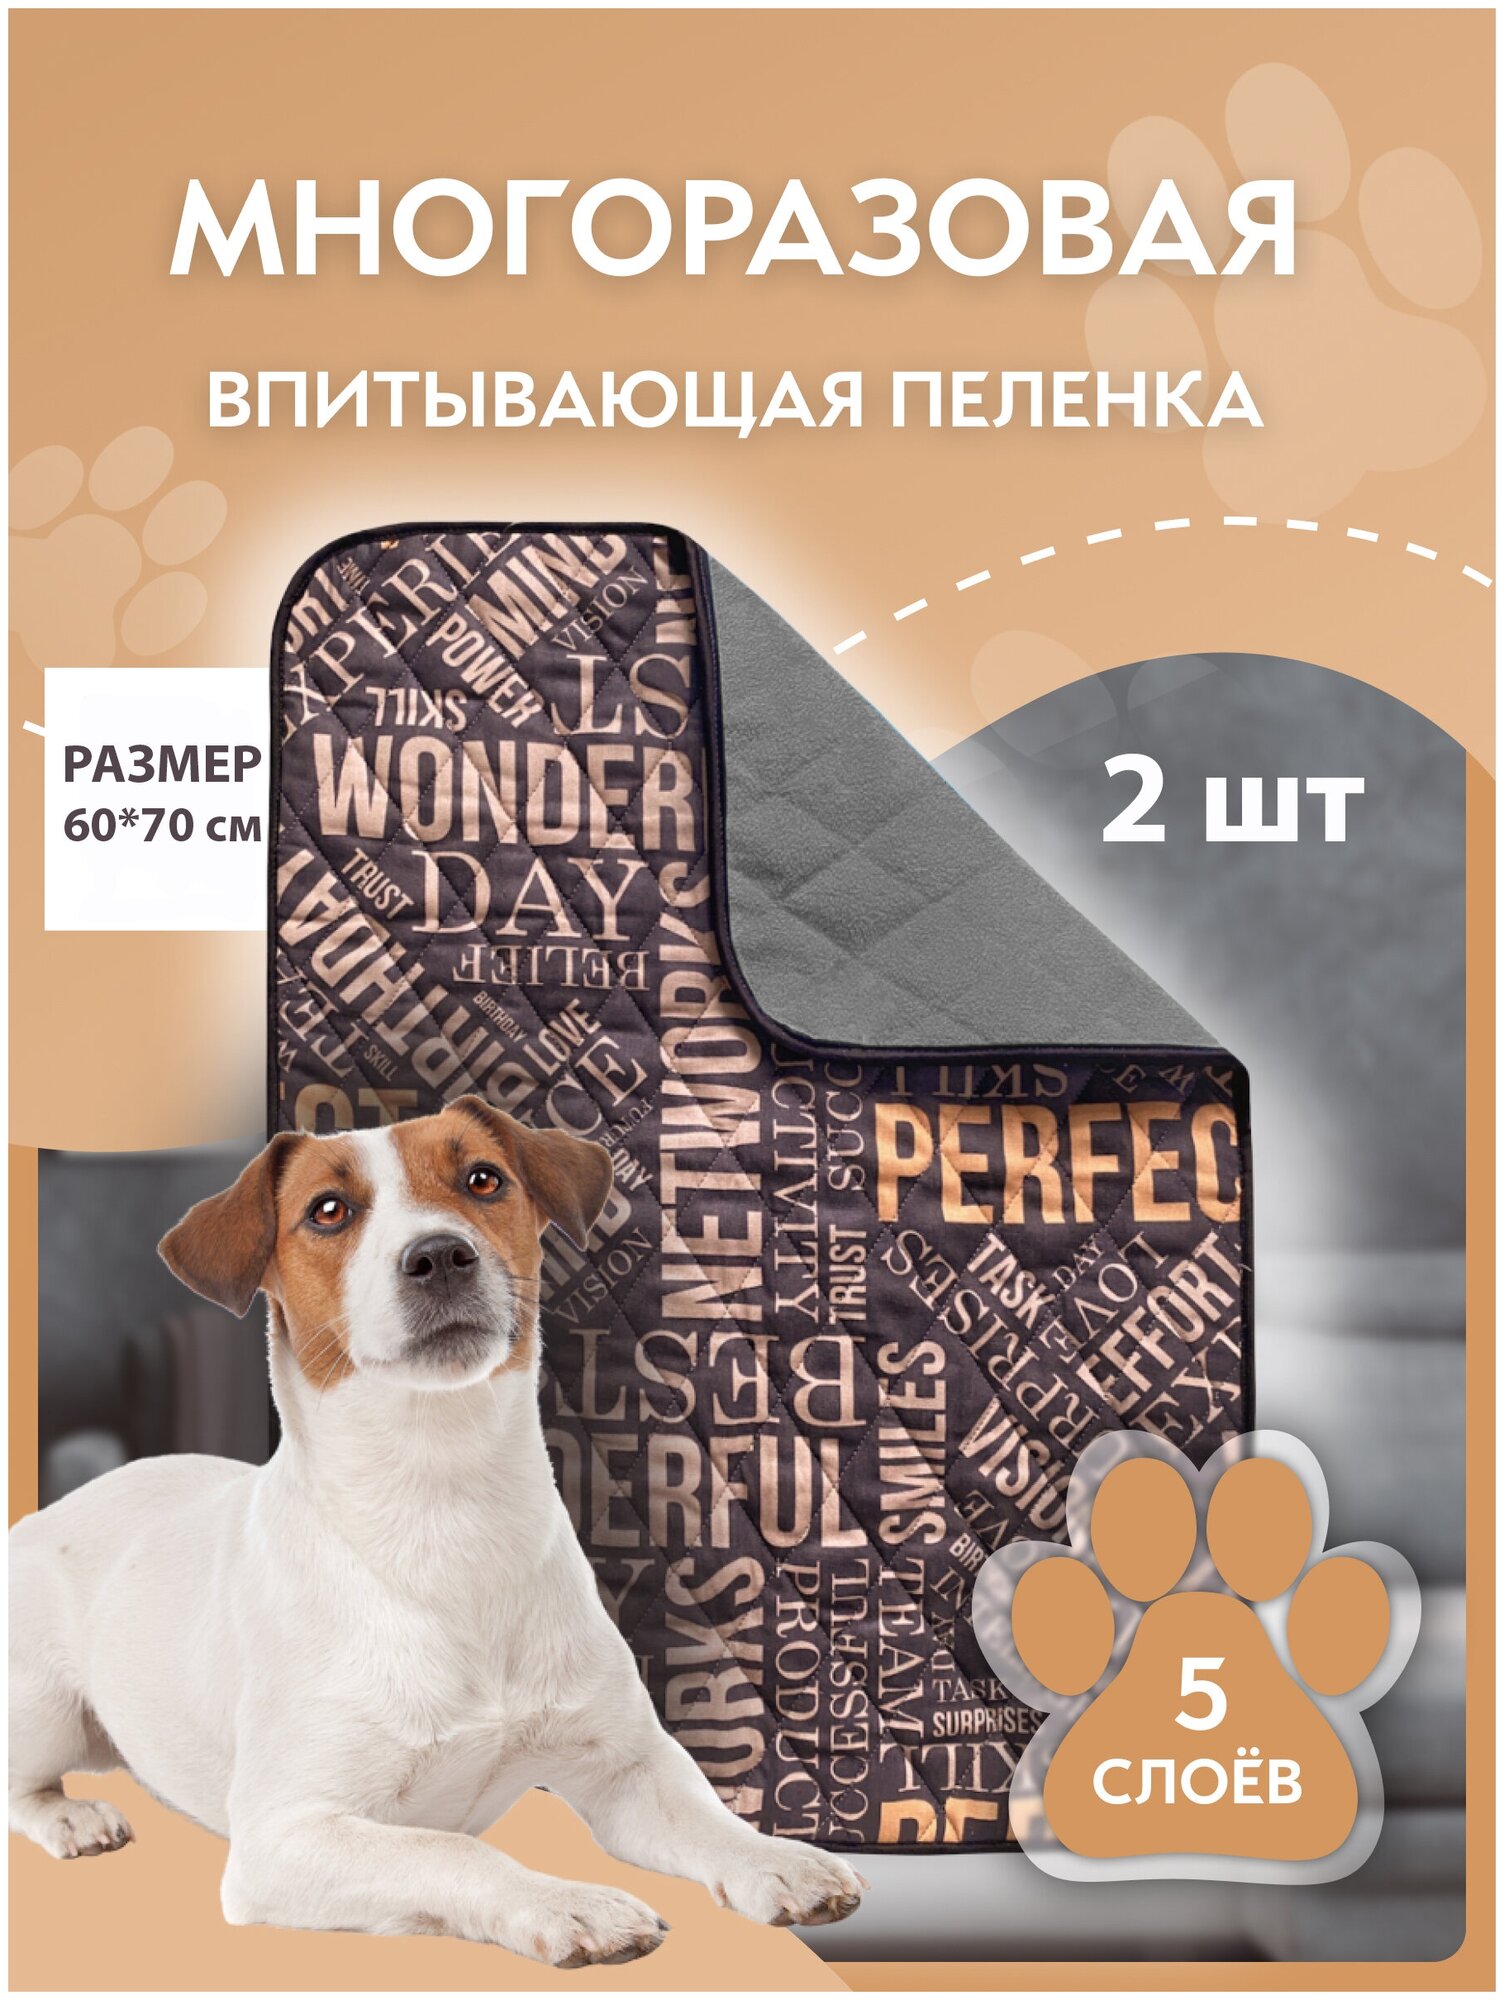 Пеленка для собак многоразовая впитывающая YUGO for you dog 60*70 см (буквы)